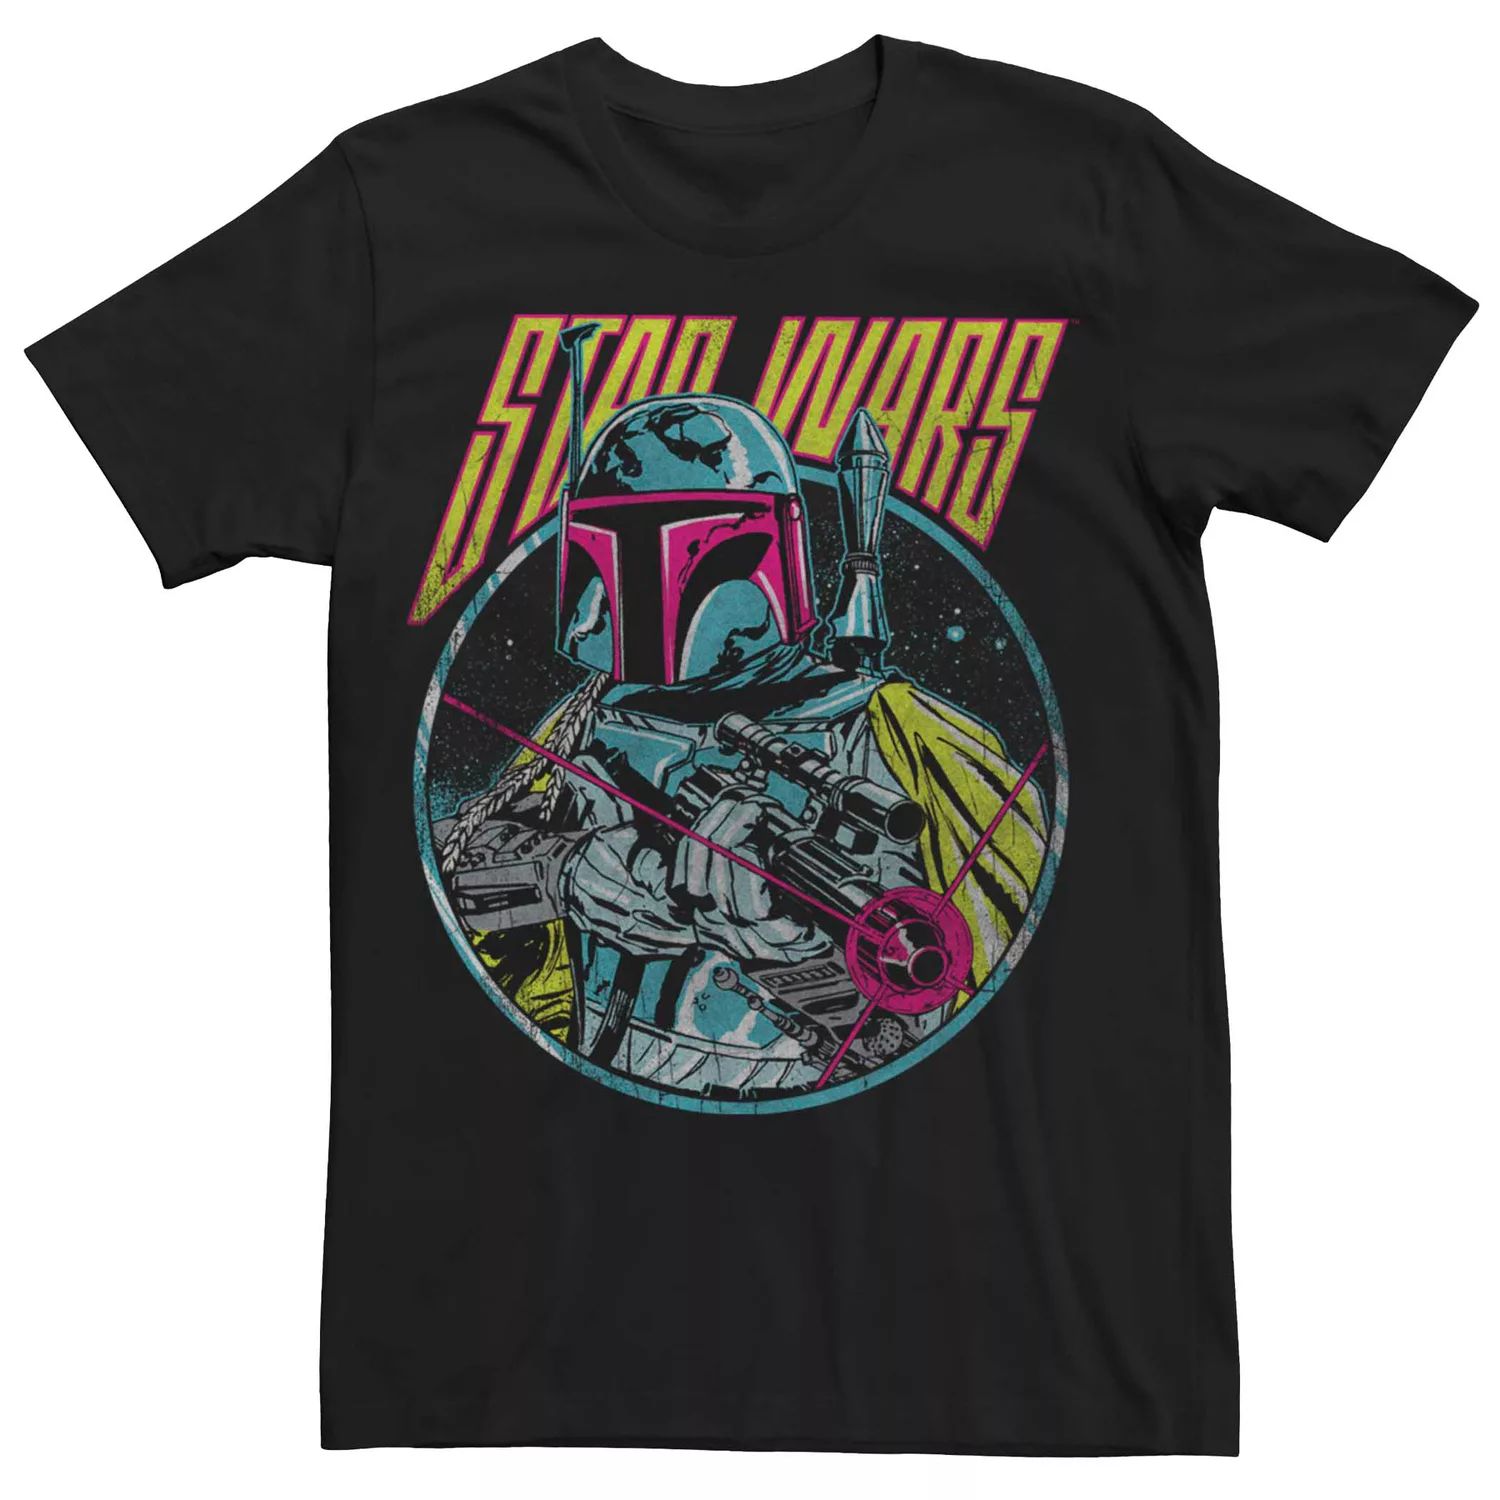 Мужская винтажная футболка с плакатом «Звездные войны» Licensed Character